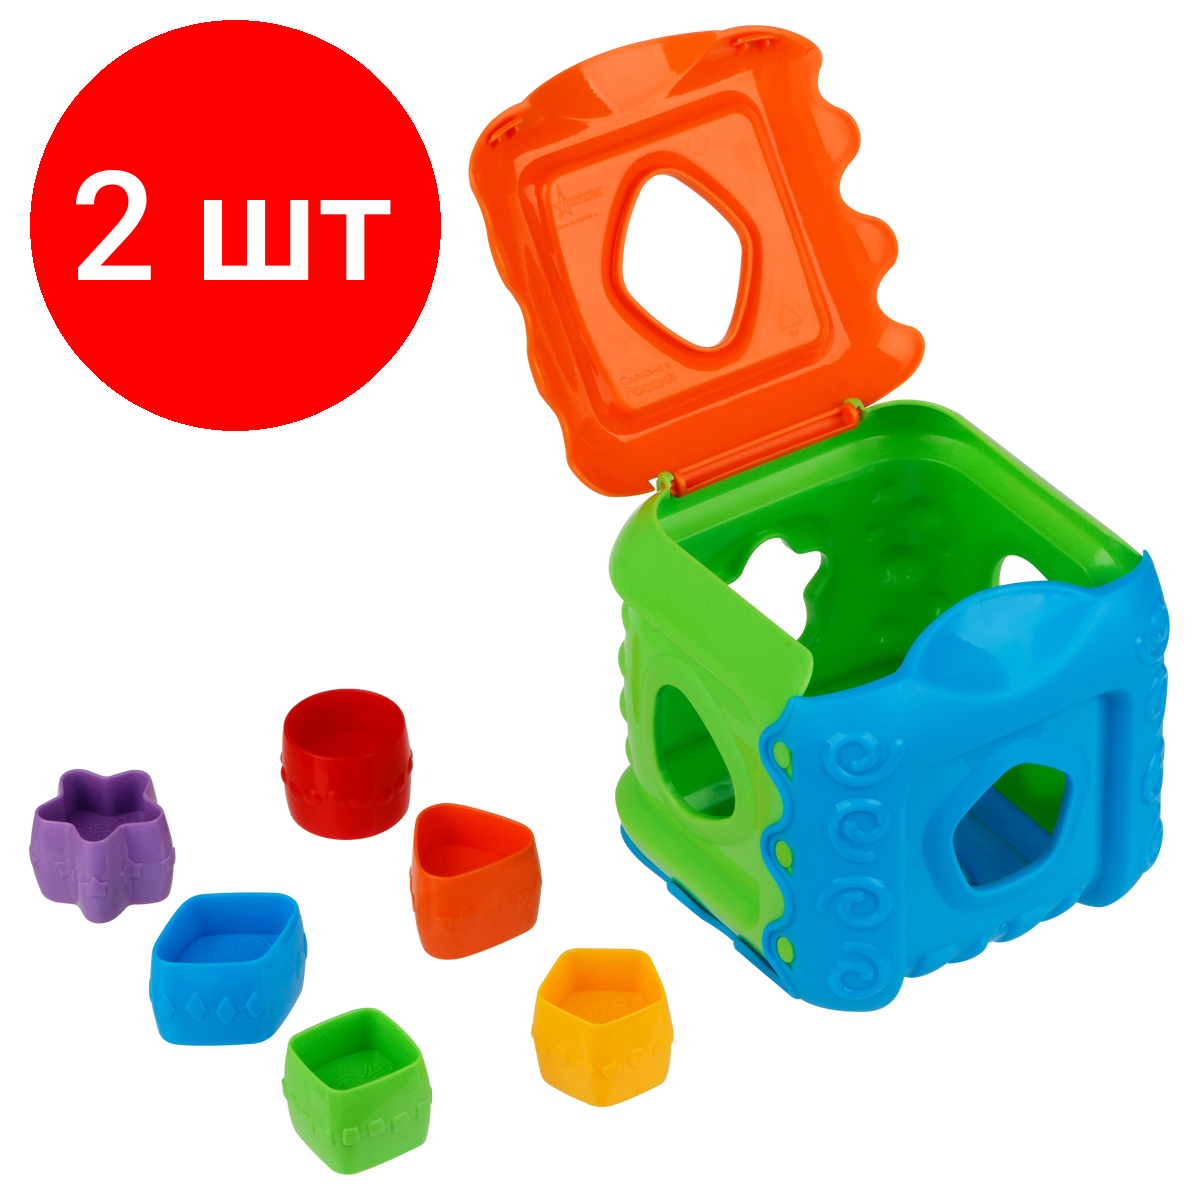 Комплект 2 шт, Дидактическия игрушка ТРИ совы сортер "Кубик", 7 предметов (кубик, 6 формочек)